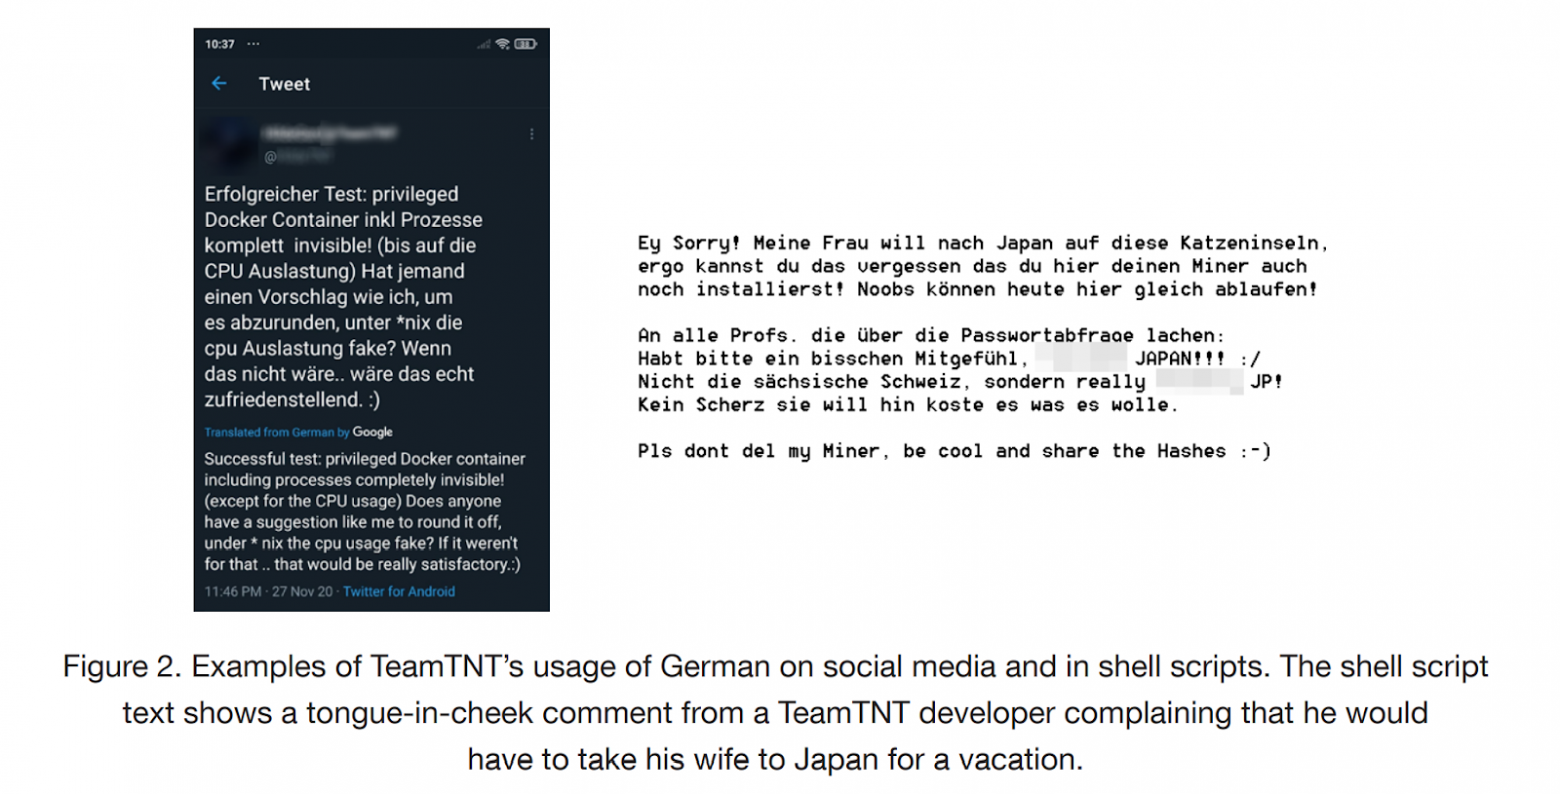 Примеры текстов TeamTNT в соцсетях и скриптах